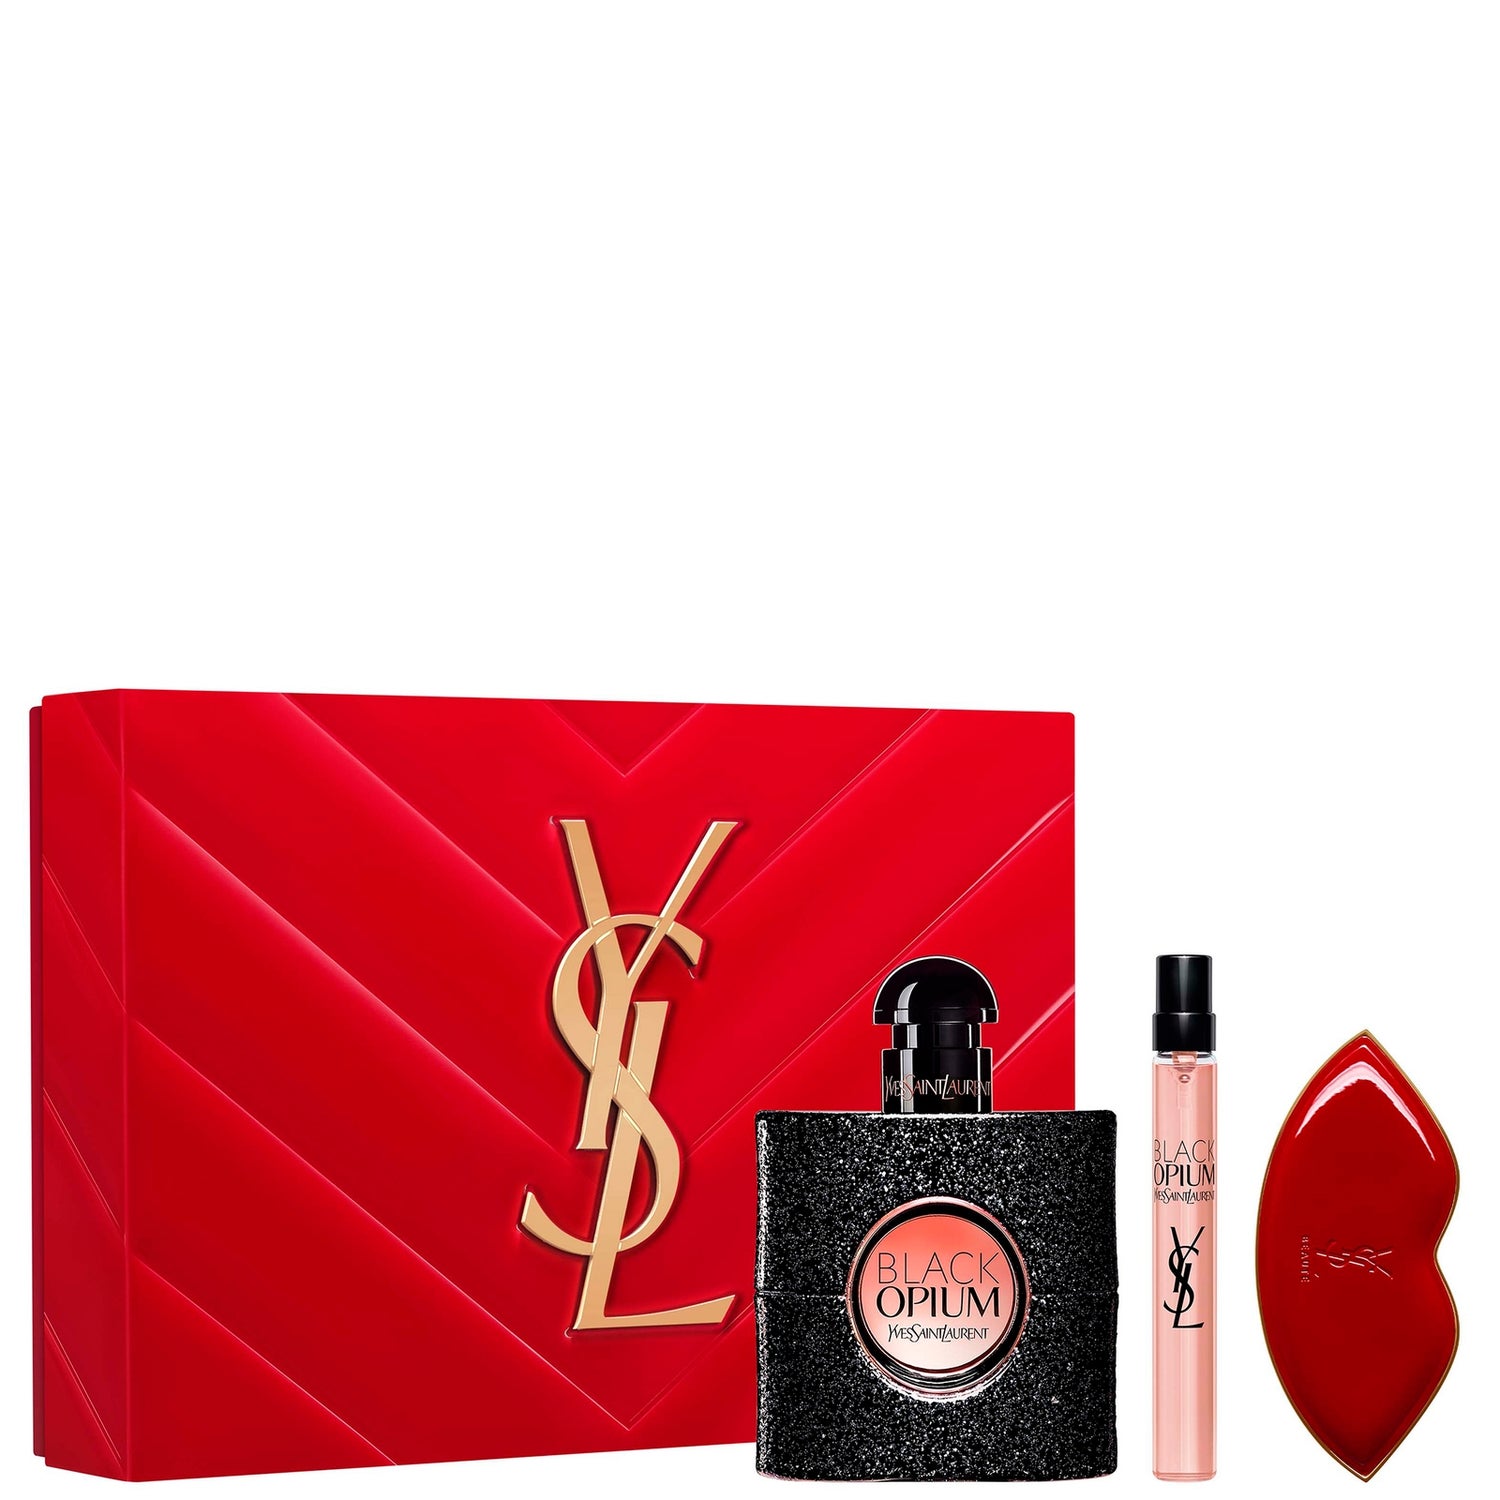 Yves Saint Laurent Black Opium Eau de Parfum 50ml Set (Worth £102.22)